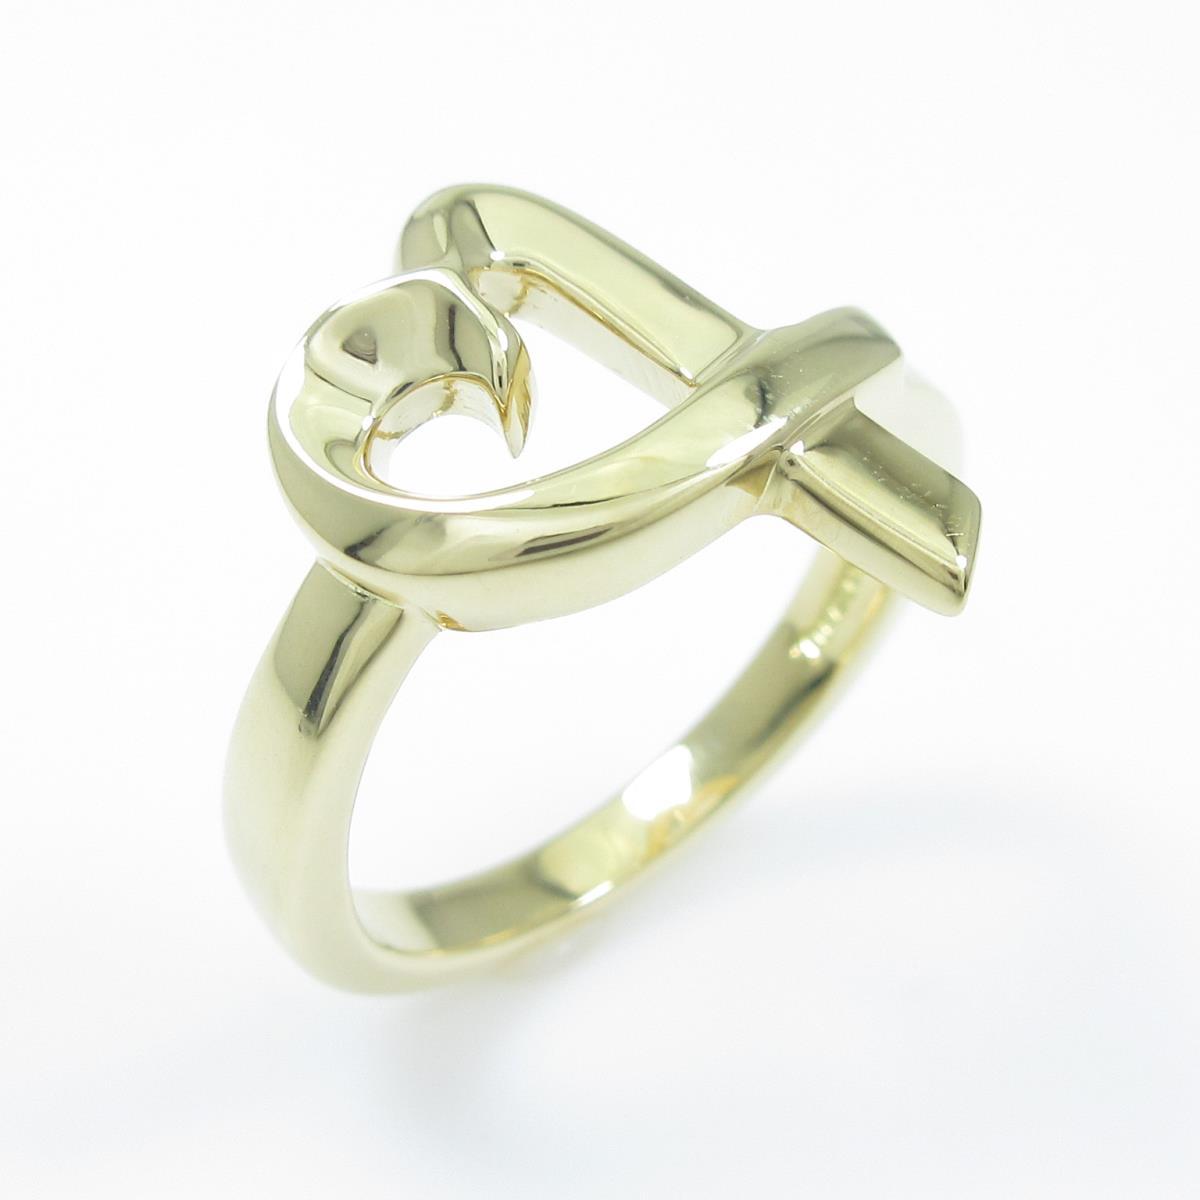 Authentic Tiffany Loving Heart Ring #260-003-012-9399 | eBay